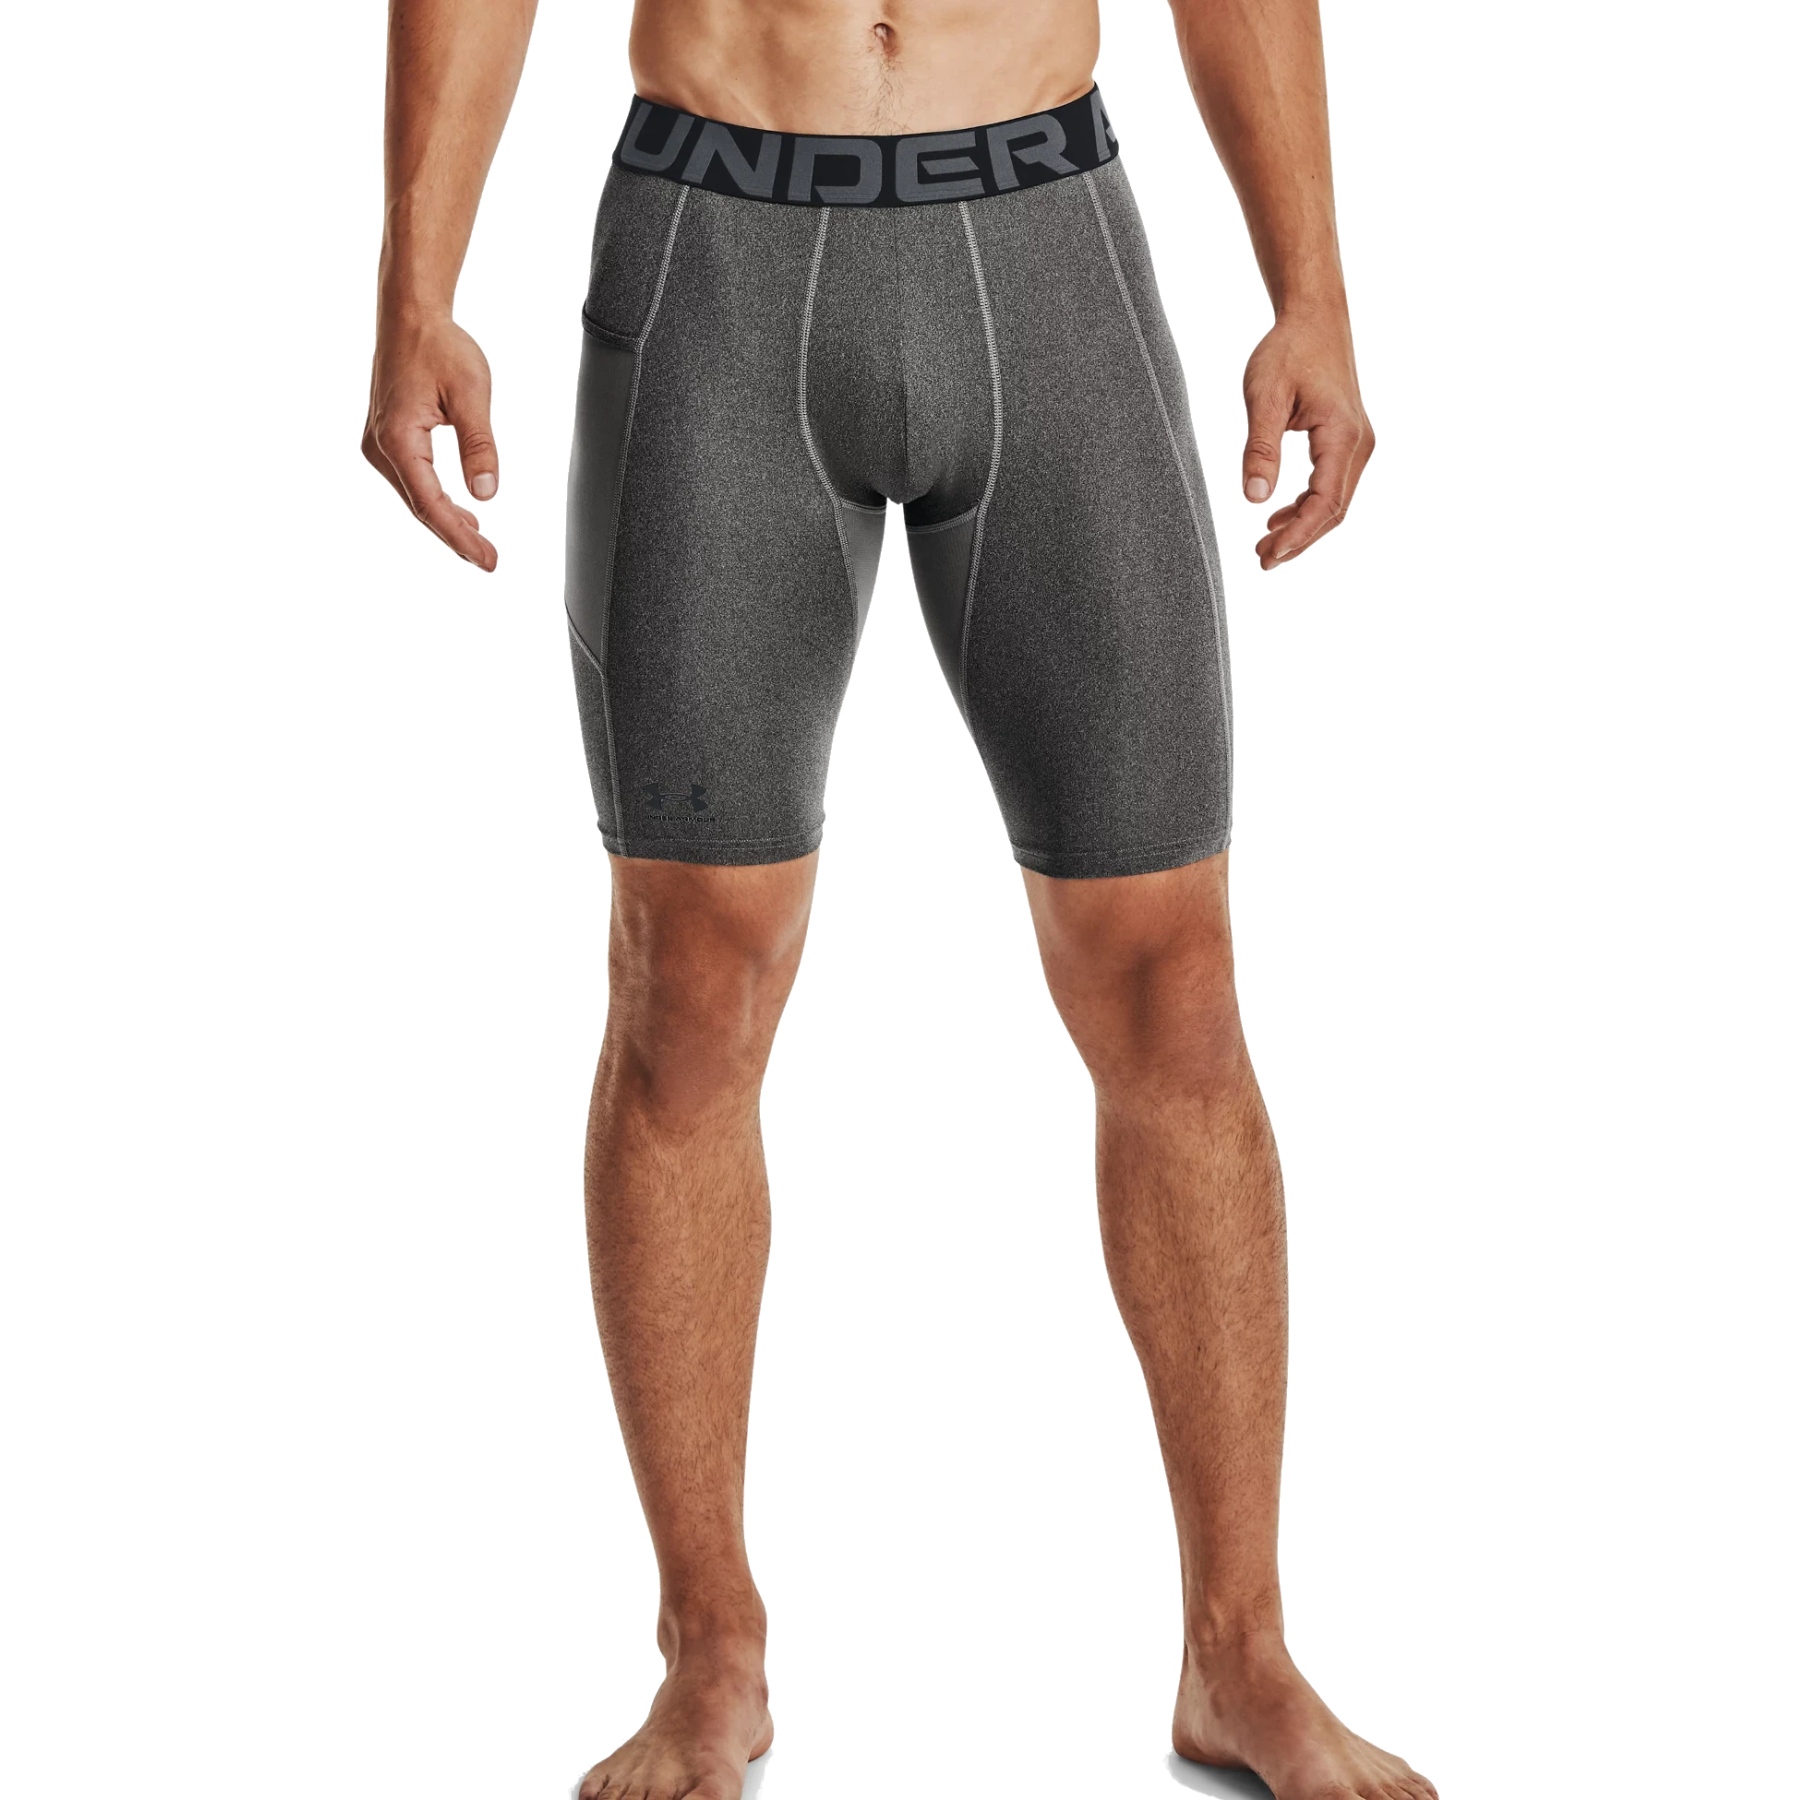 Produktbild von Under Armour HeatGear® Armour Long Shorts mit Tasche Herren - Carbon Heather/Black